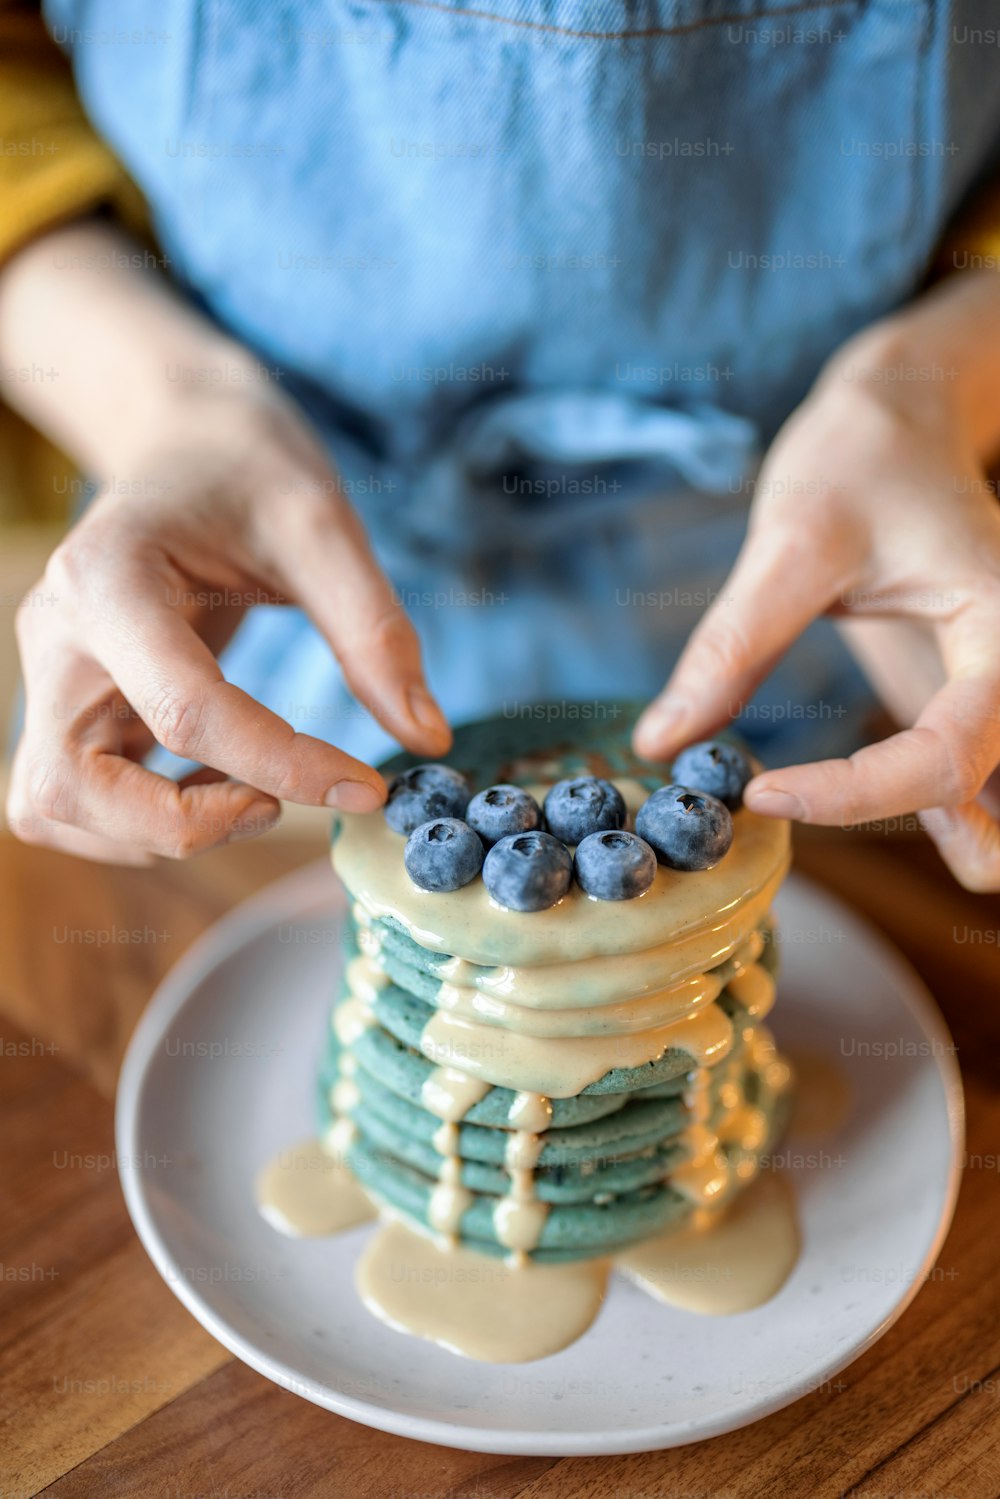 Femme en tablier bleu décorer des crêpes américaines bleues avec des myrtilles versées avec de la souse au caramel sur une table en bois. Nourriture savoureuse faite maison. Célébration du Gras.